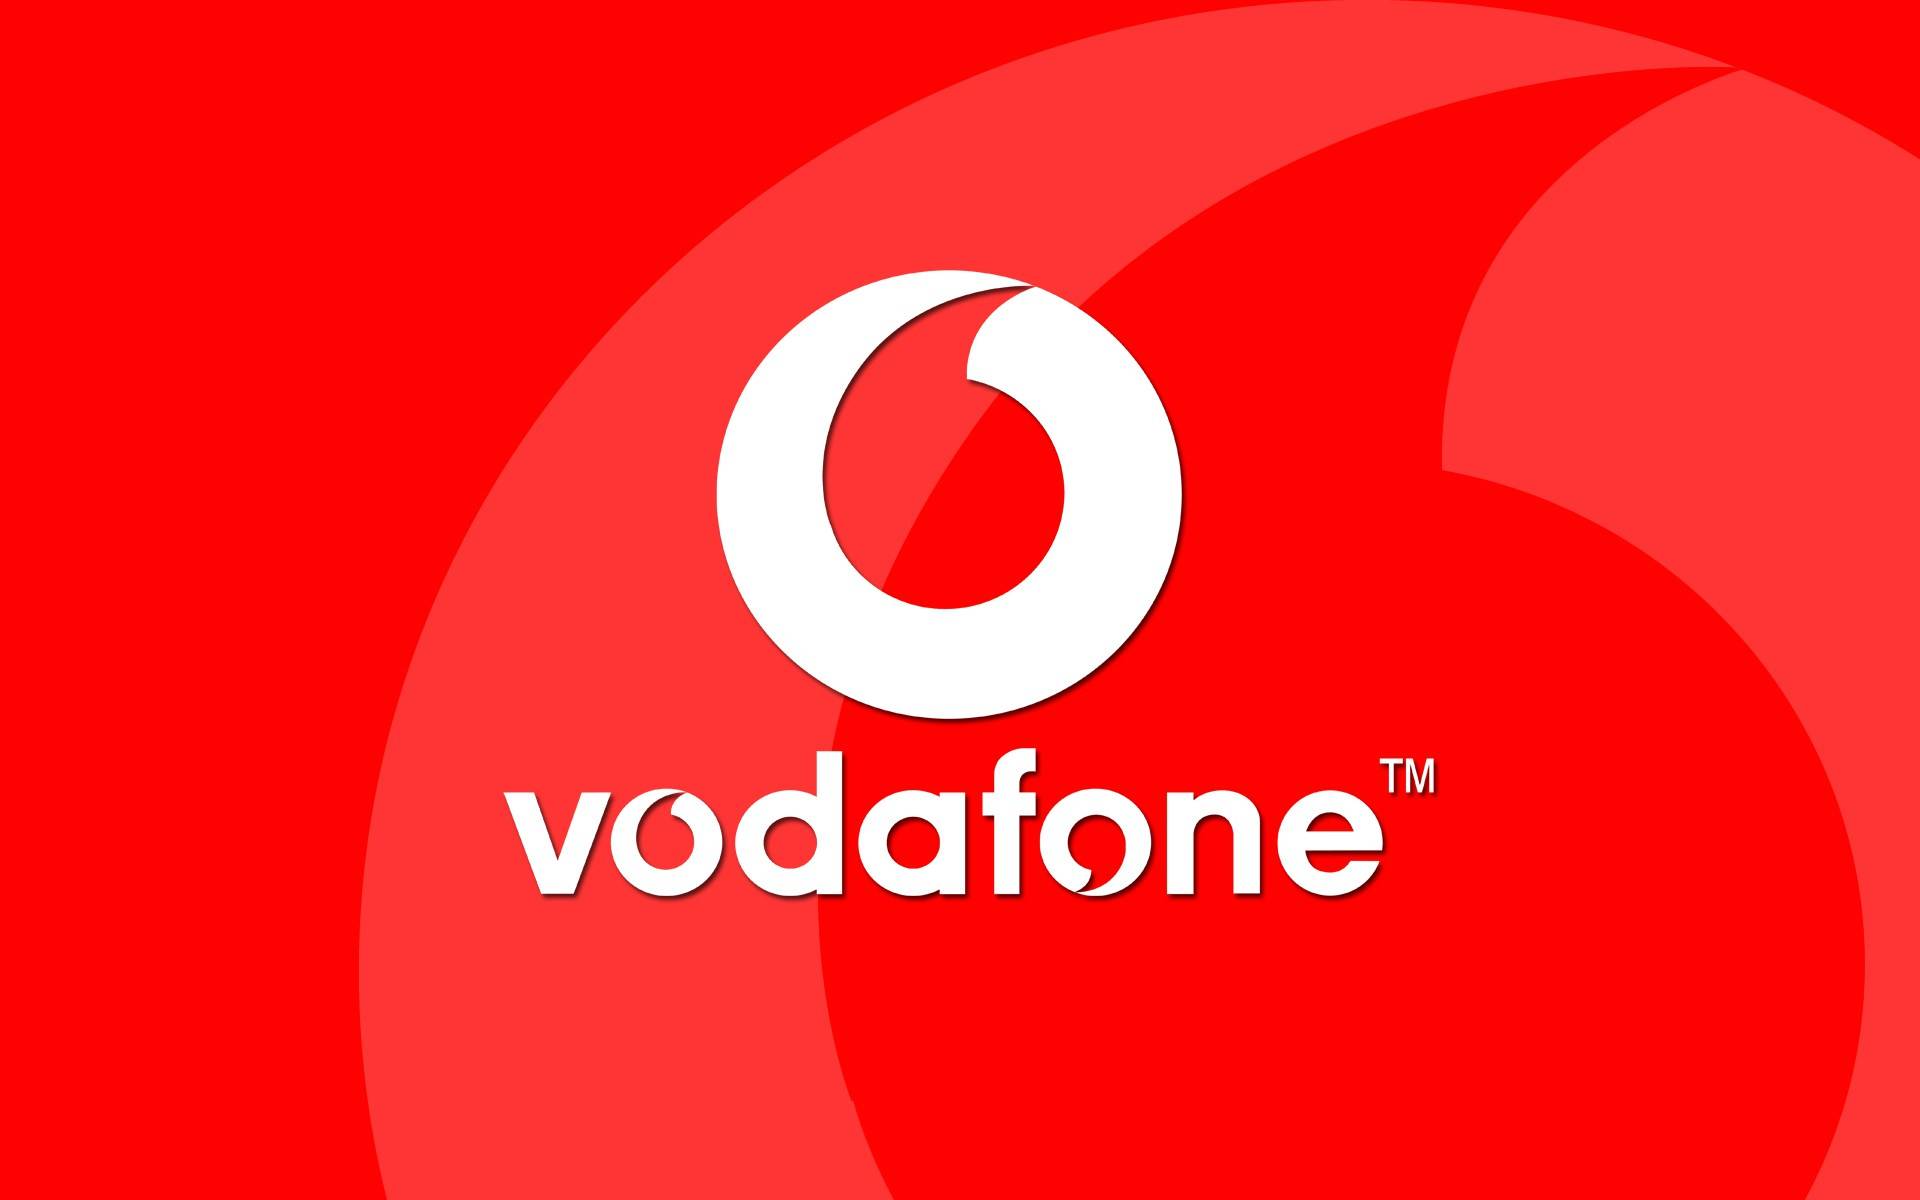 Vodafone. 2. september med Smartphones, hvis priser er MEGET nedsatte